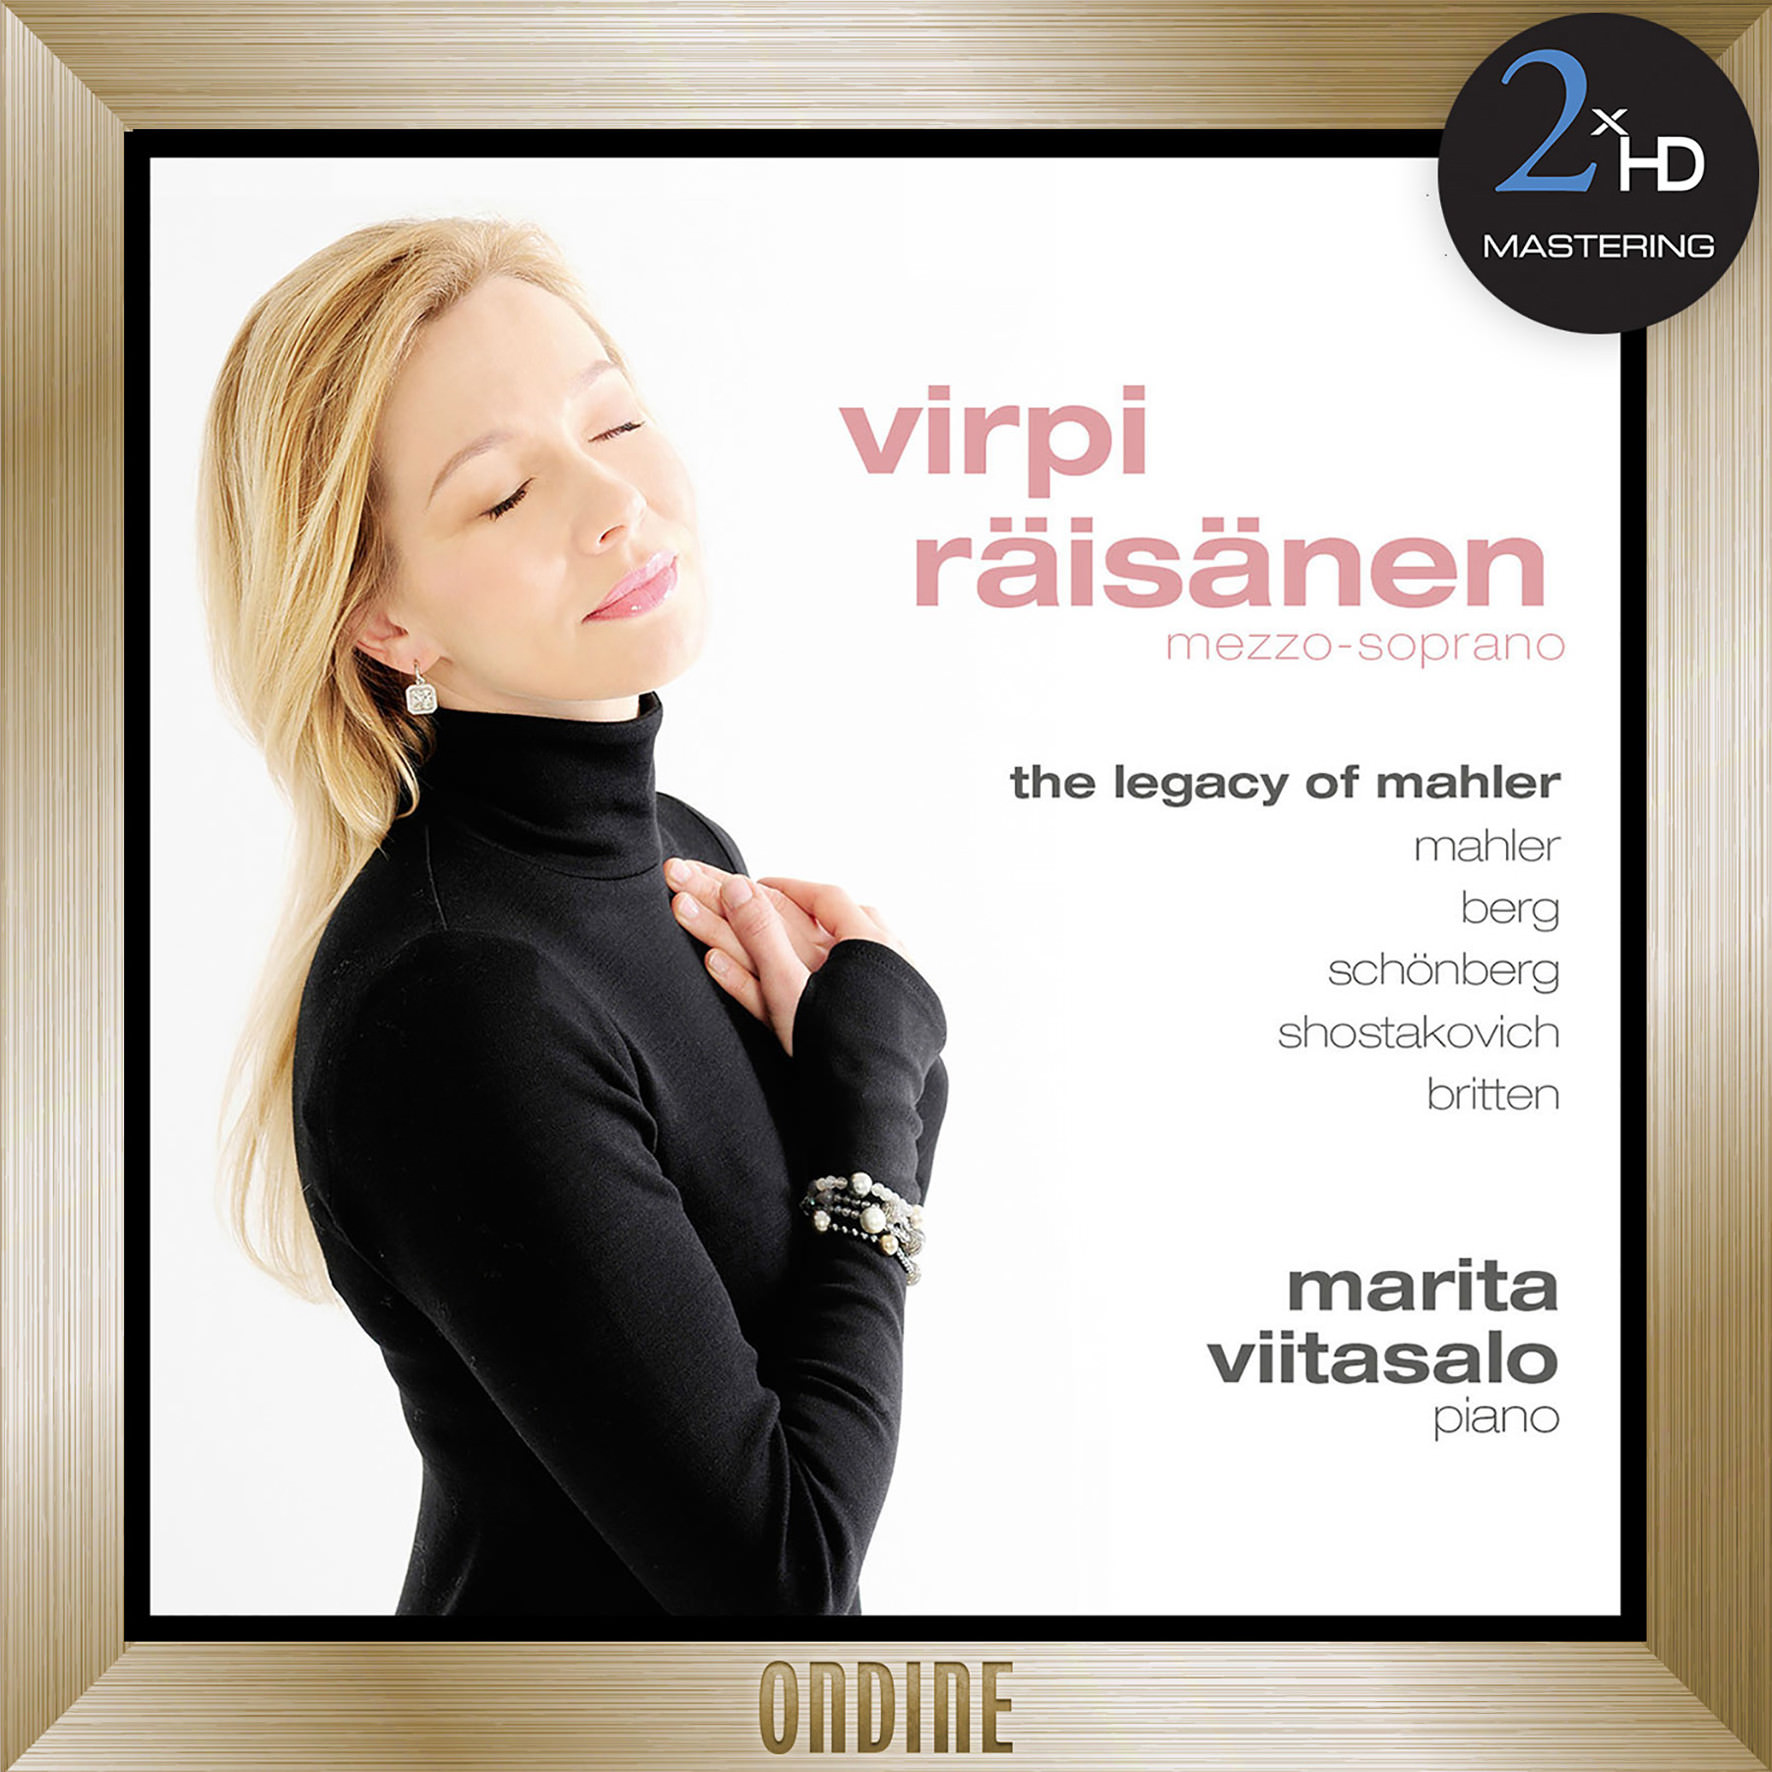 Virpi Raisanen, Marita Viitasalo - The Legacy of Mahler (2012/2016) [HDTracks FLAC 24bit/192kHz]